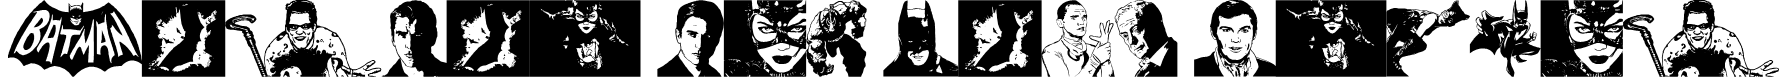 Batman The Dark Knight Font